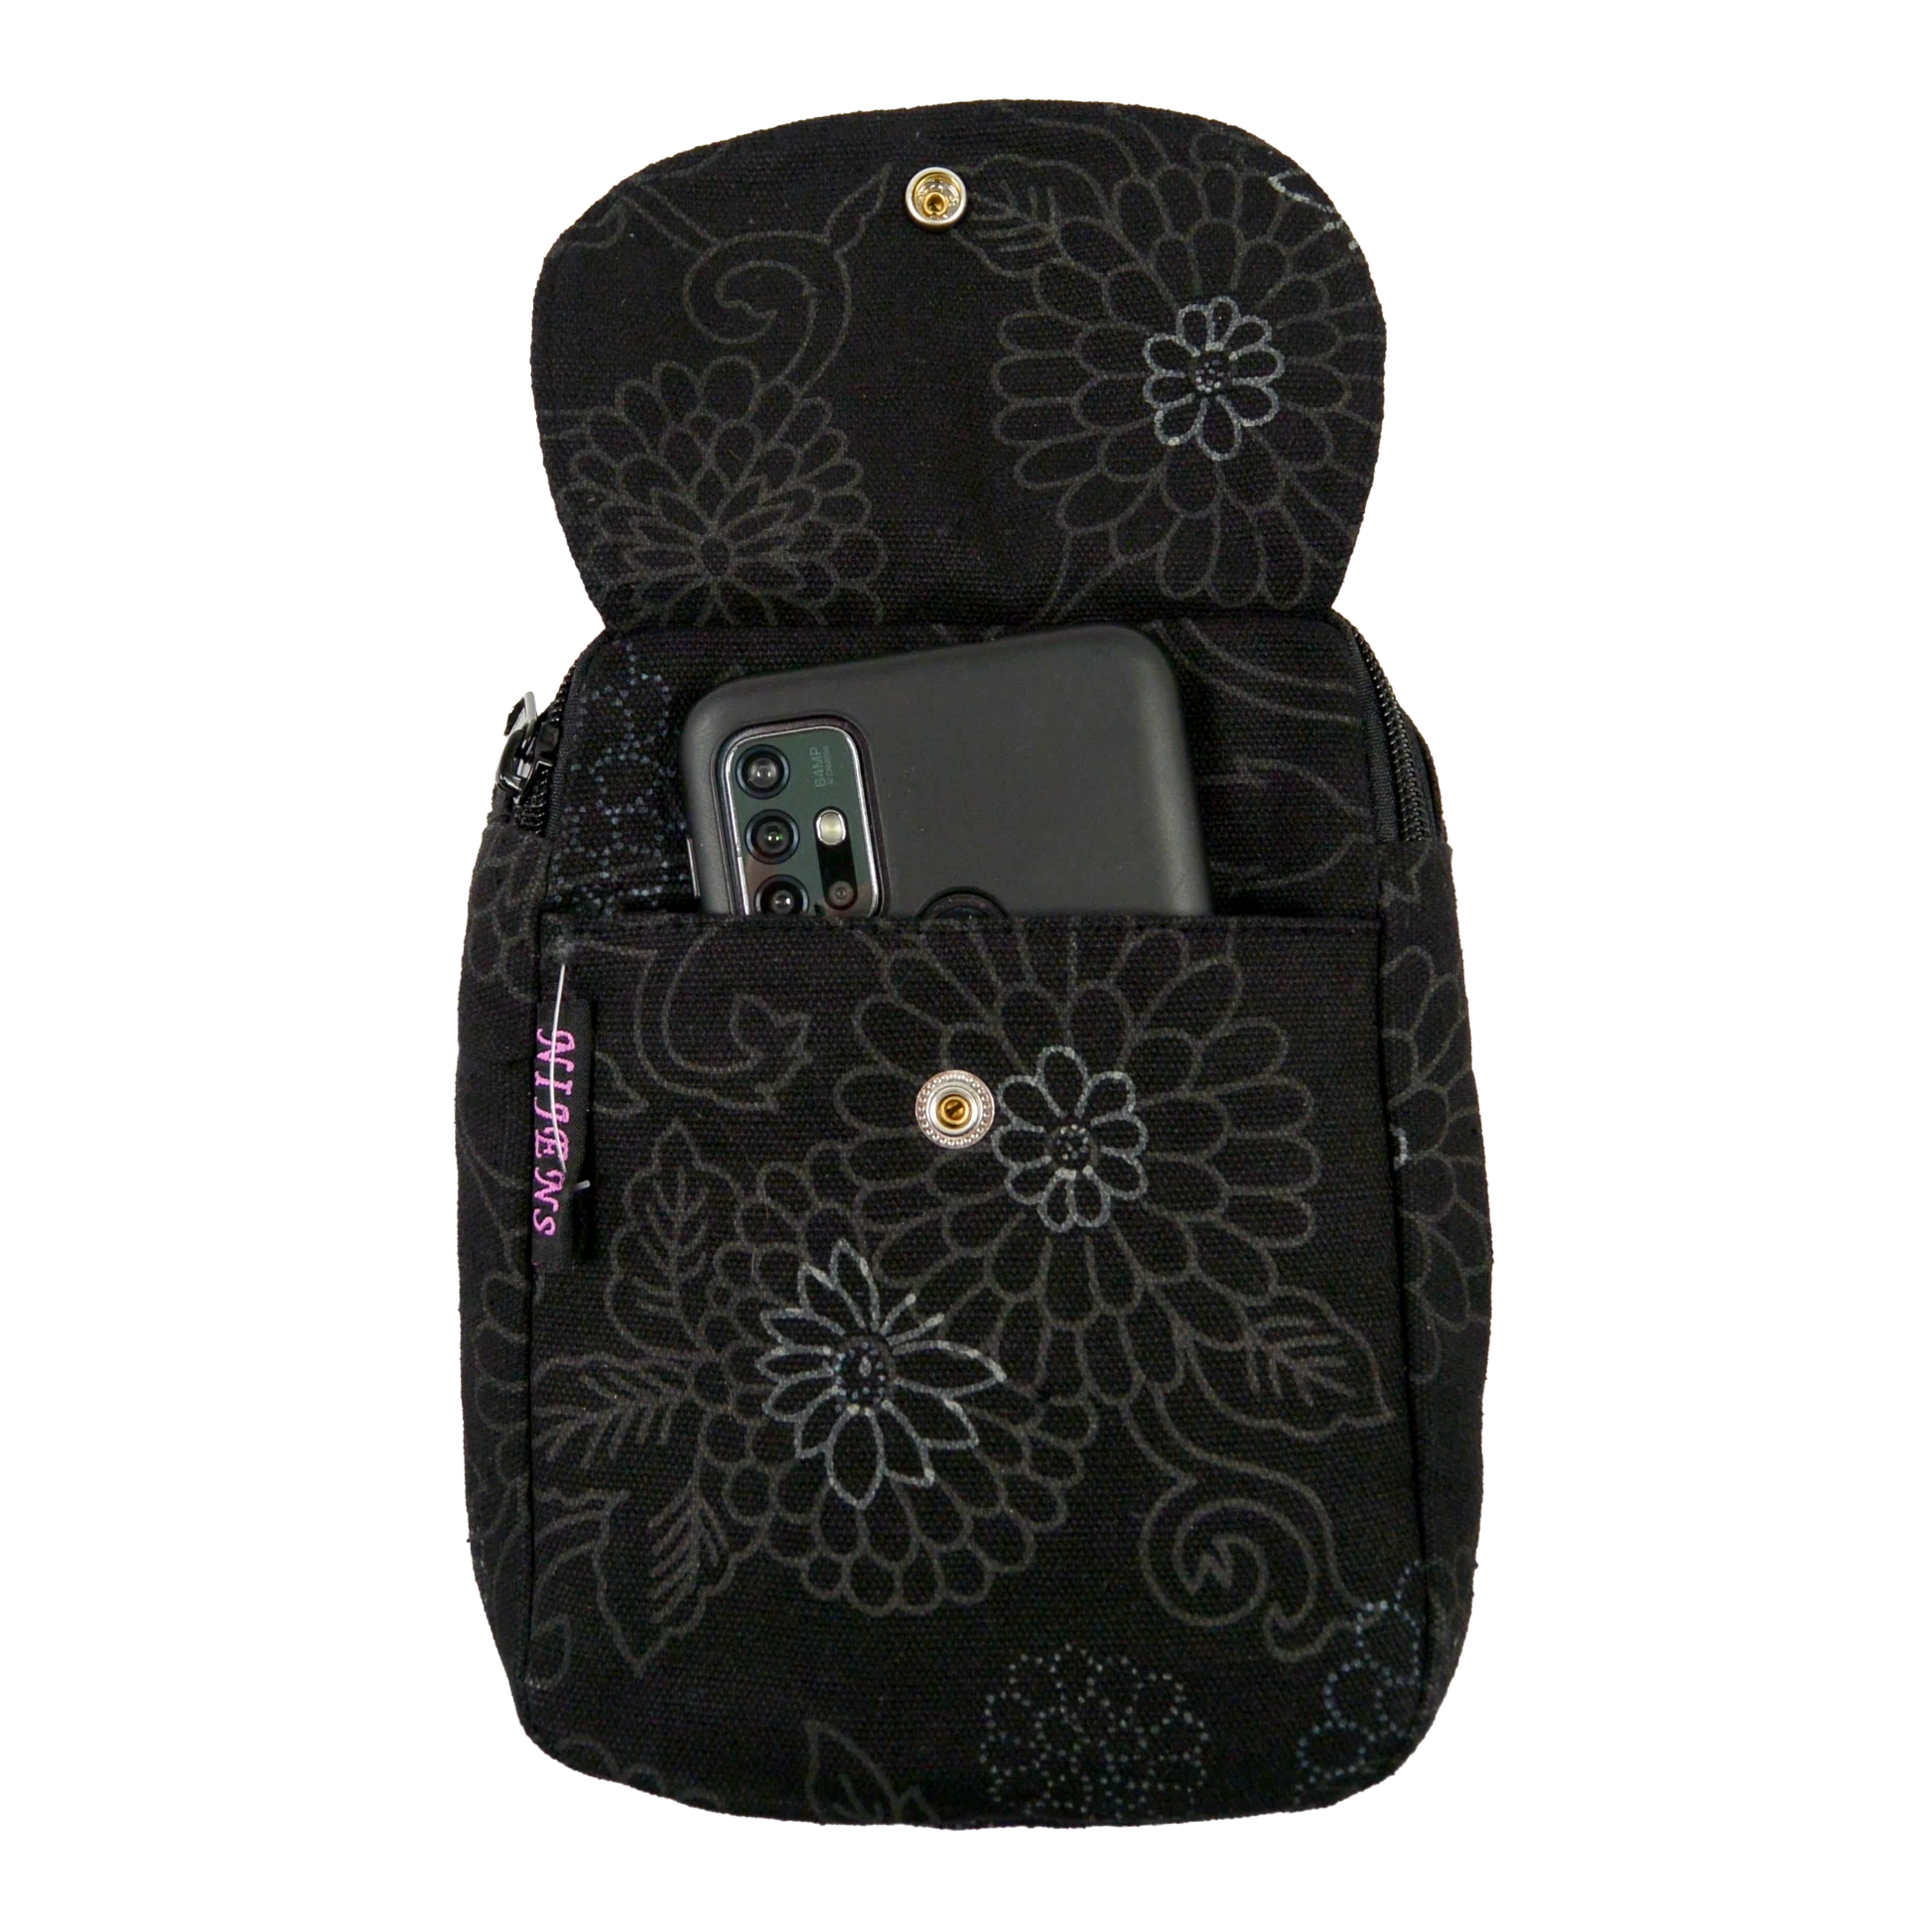 Beuteltasche Baumwolle, schwarz mit floralem Muster und zwei Gürtelschlaufen zum Anbringen an Gürtel mit Einsteckfach vorne.